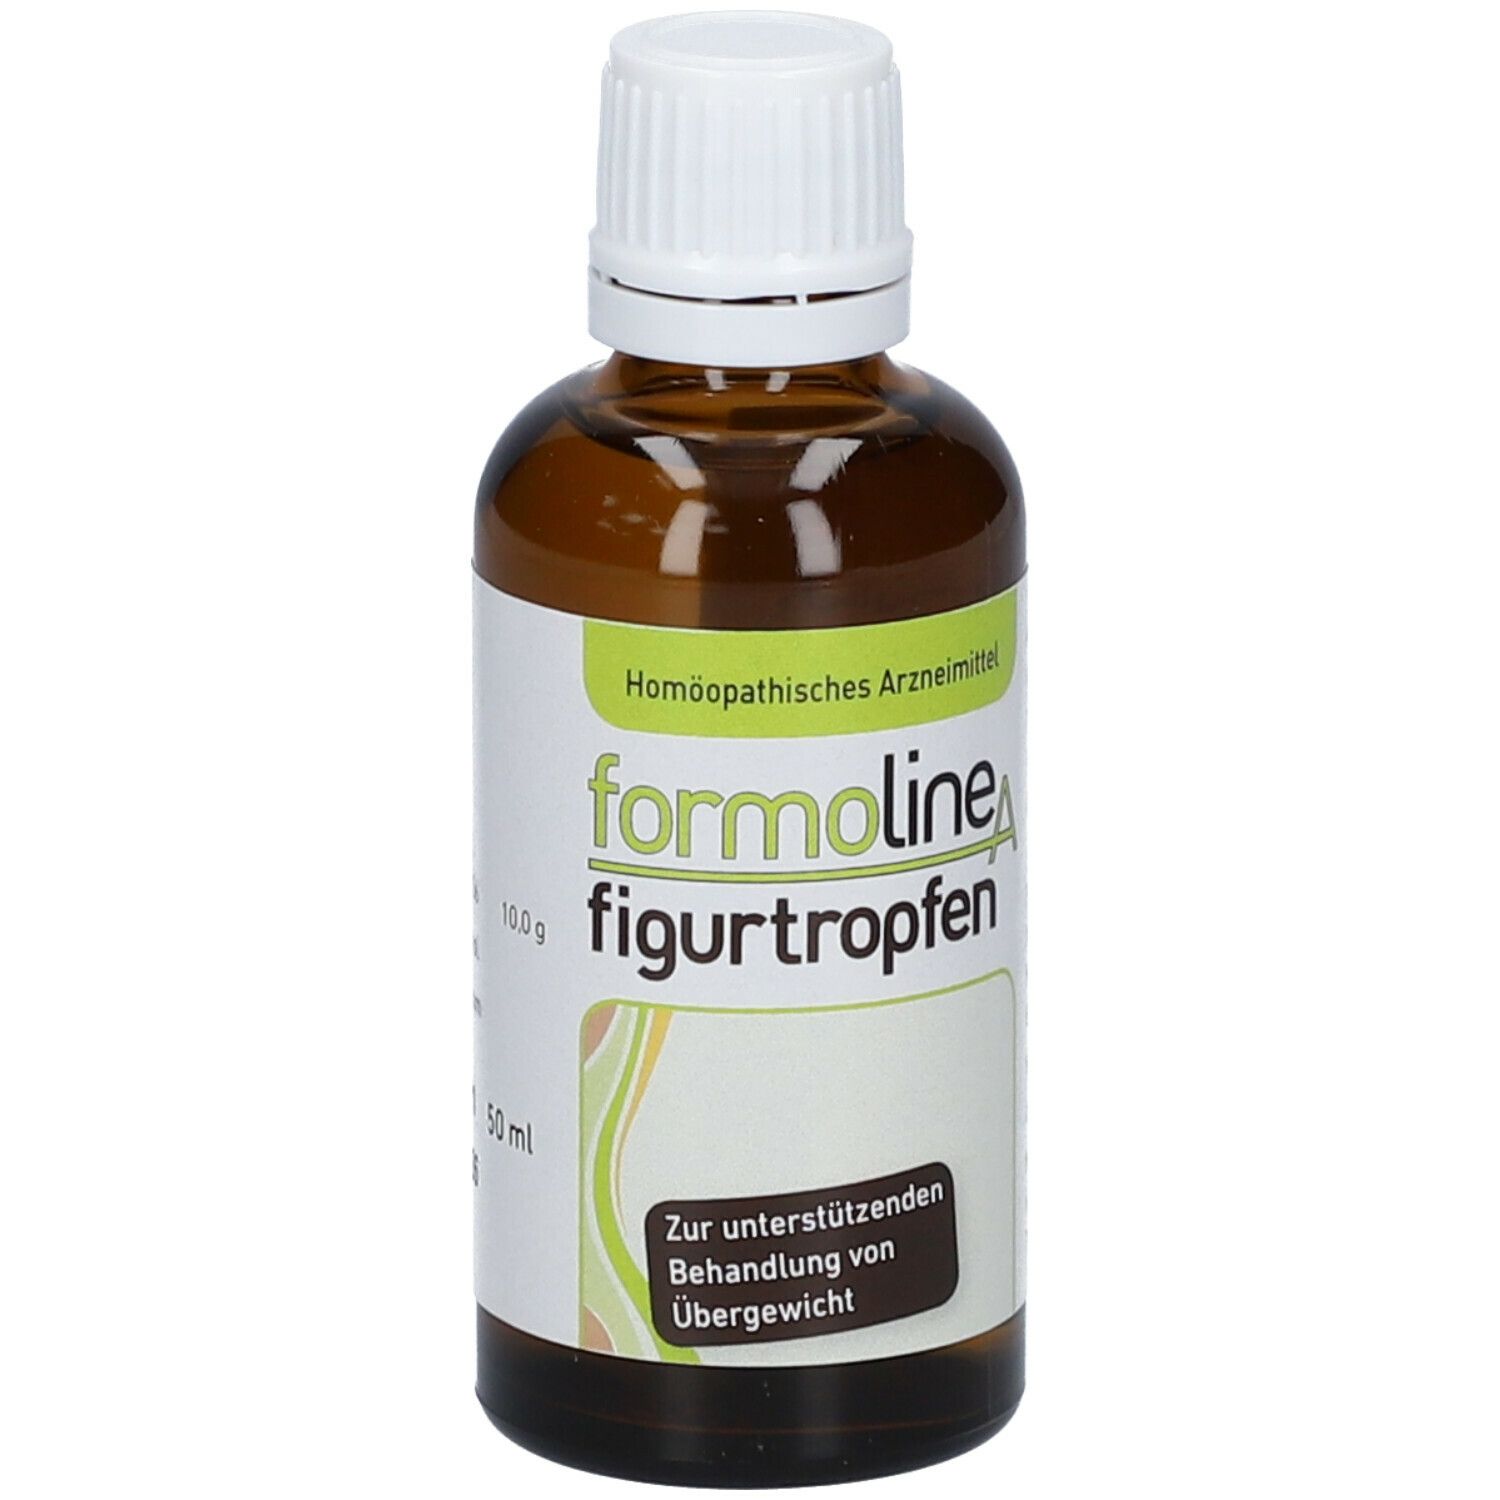 formoline A Figurtropfen